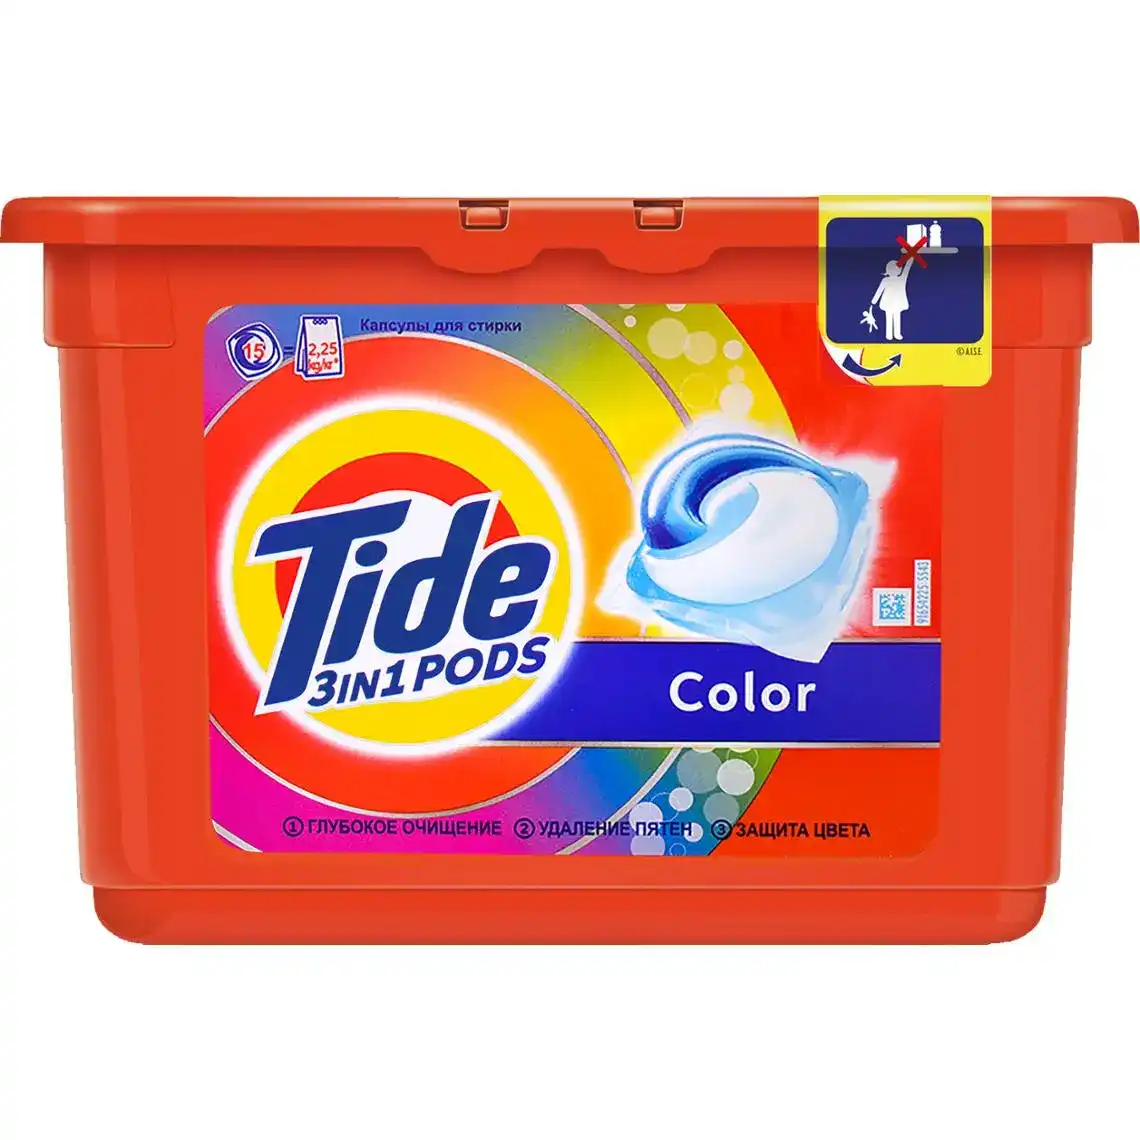 Капсули для прання Tide 3в1 Pods Color 15 шт.